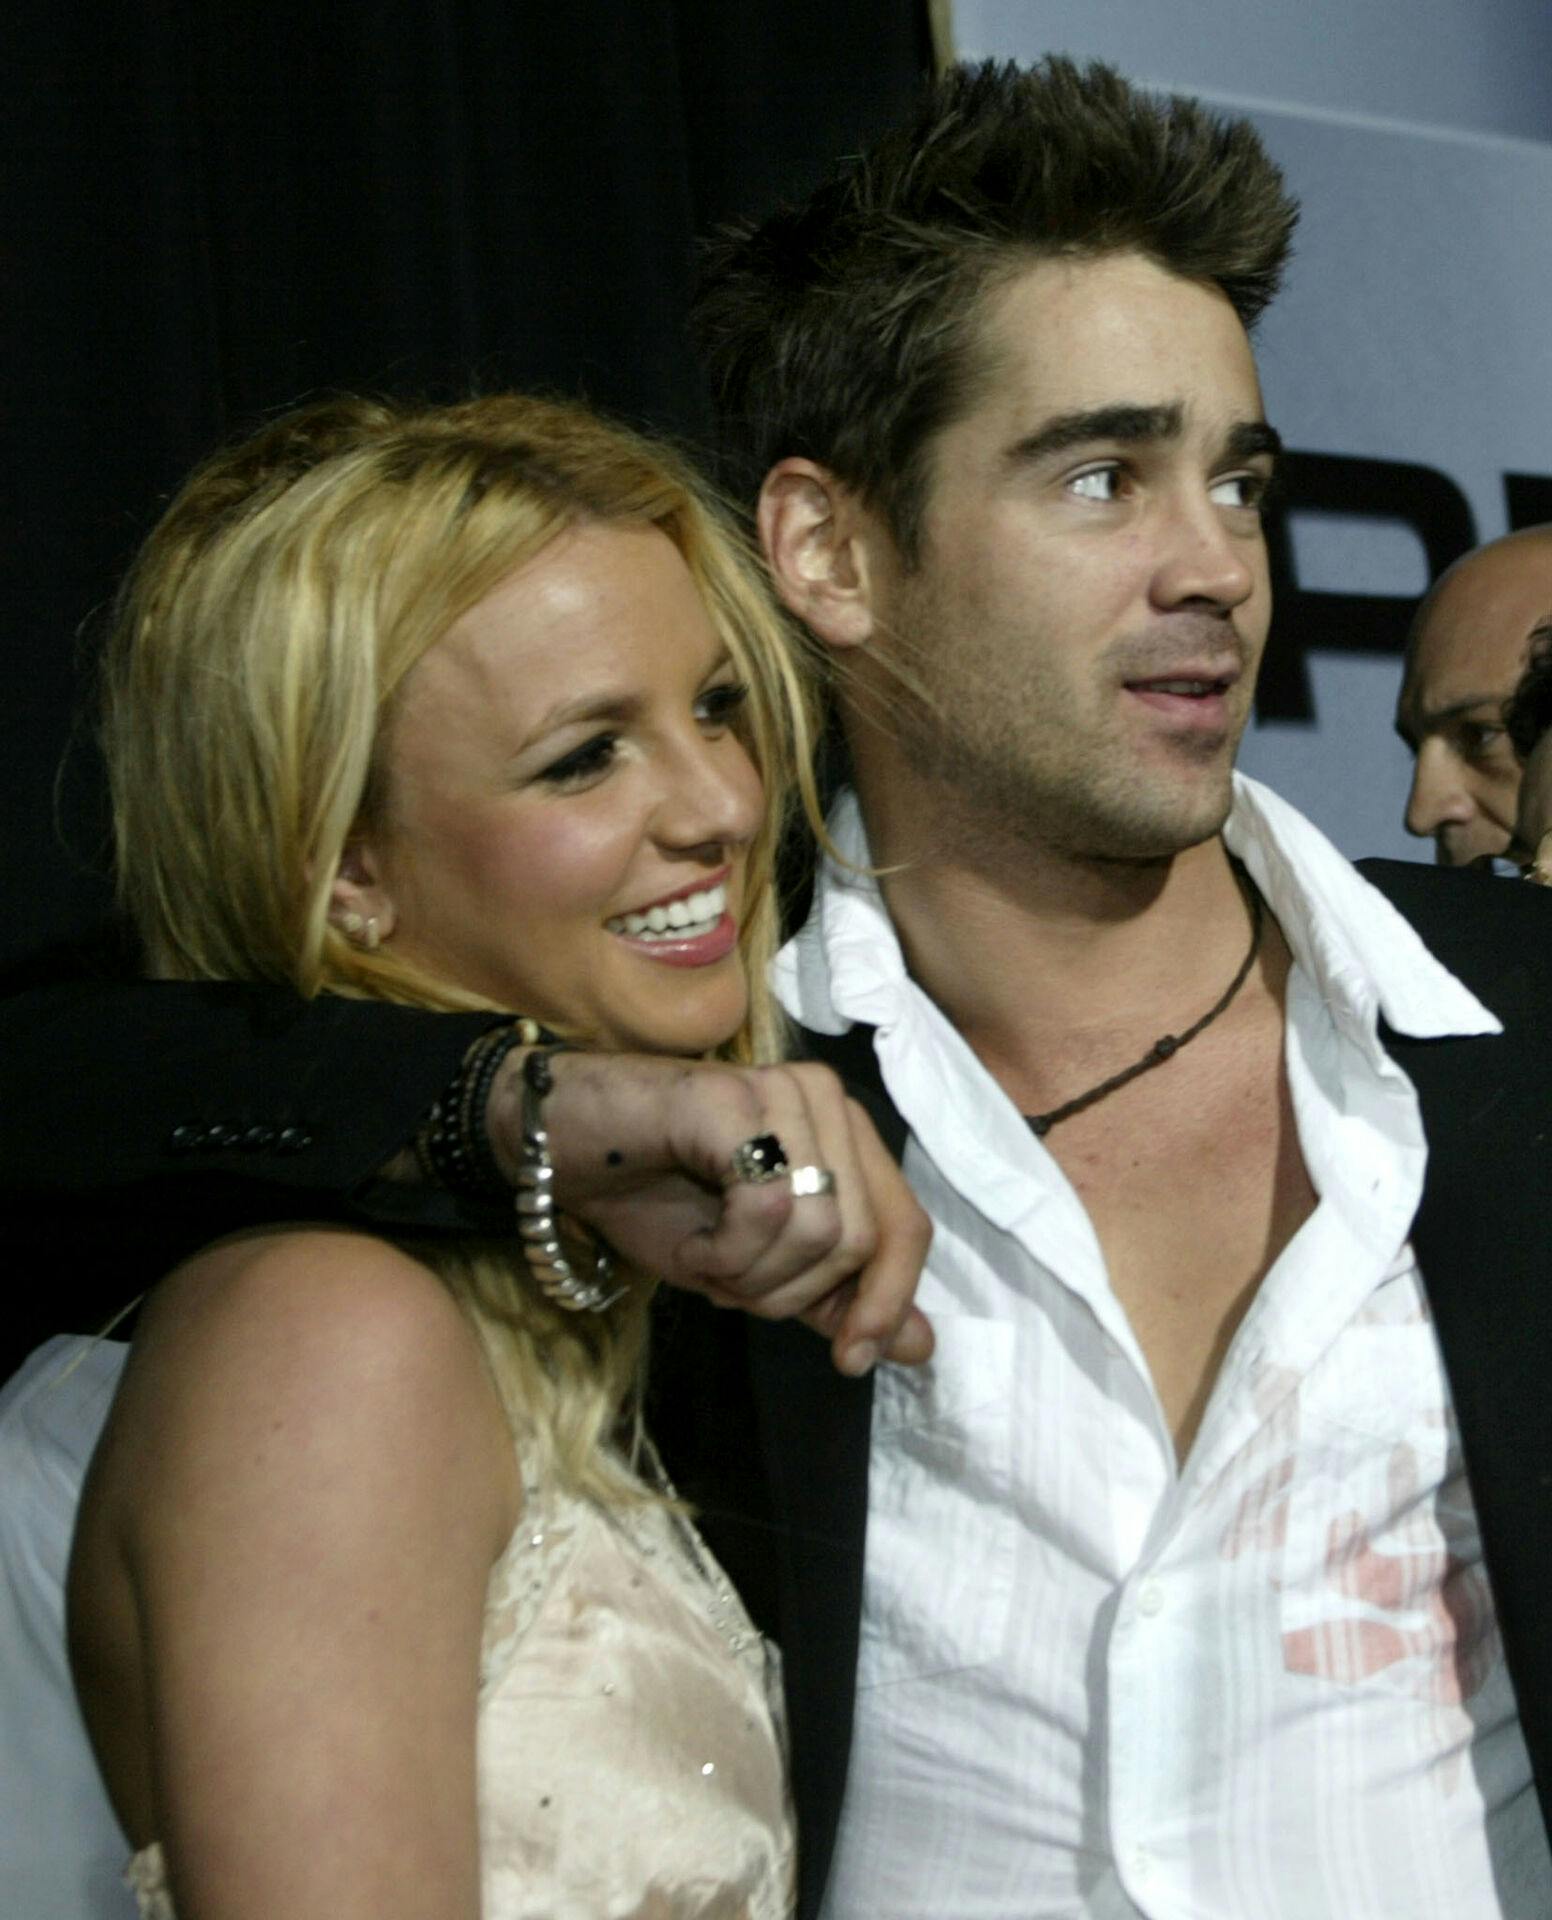 Colin Farrell (th.) ankom med armen om Britney Spears, da der var premiere på filmen "The Recruit" i januar 2003. Colin Farrell benægtede senere, at deres forhold havde varet meget længere end et par enkelte dates. 